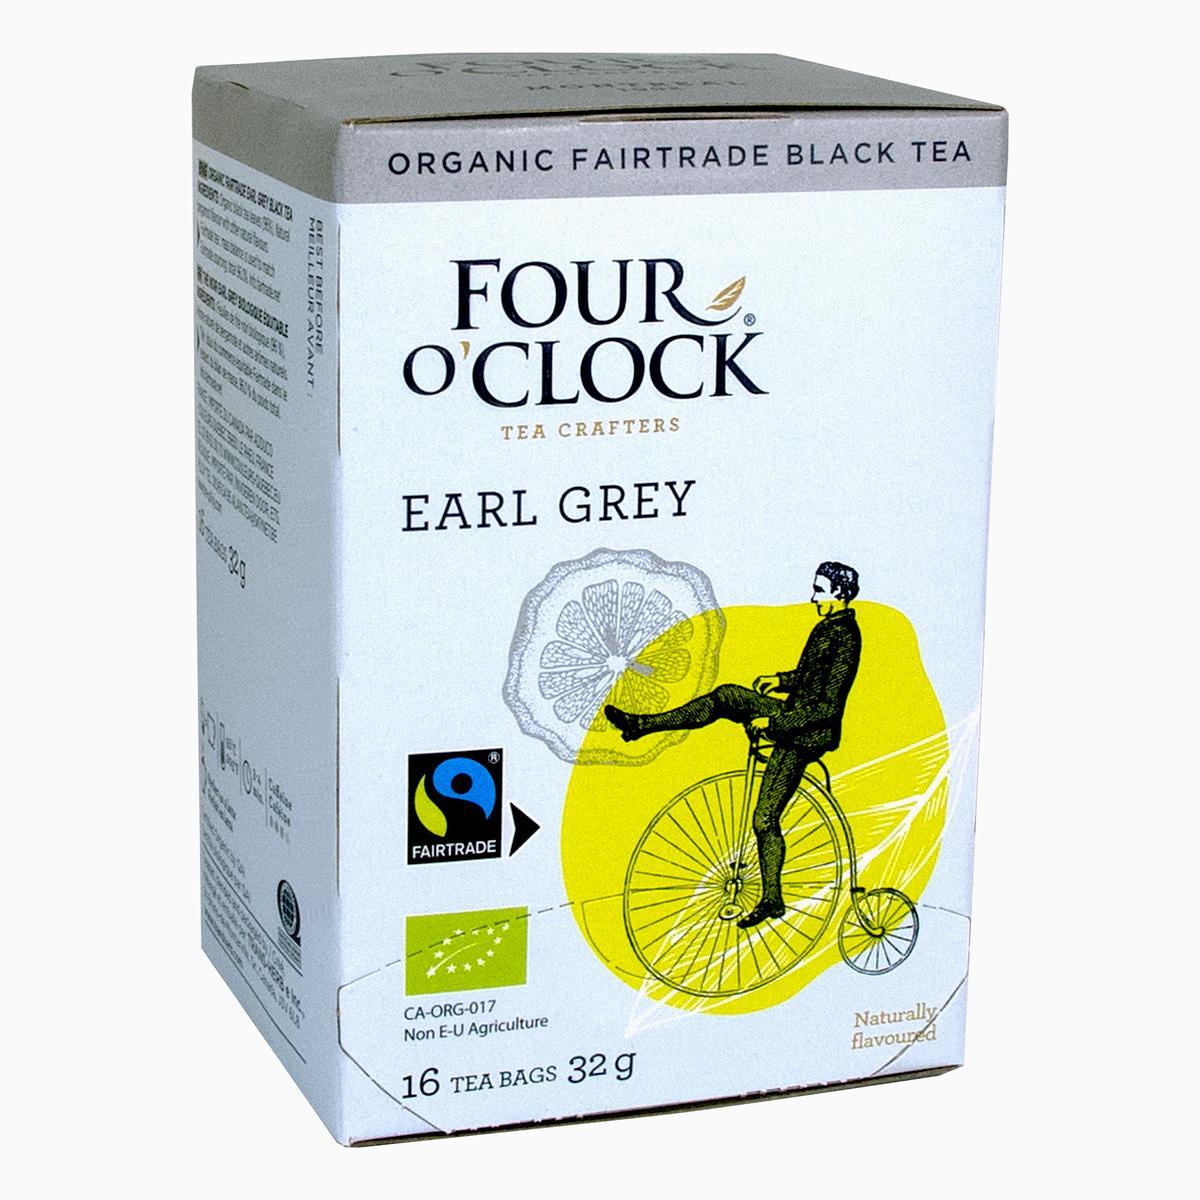 Four O’Clock's Four O'Clock EARL GRAY '